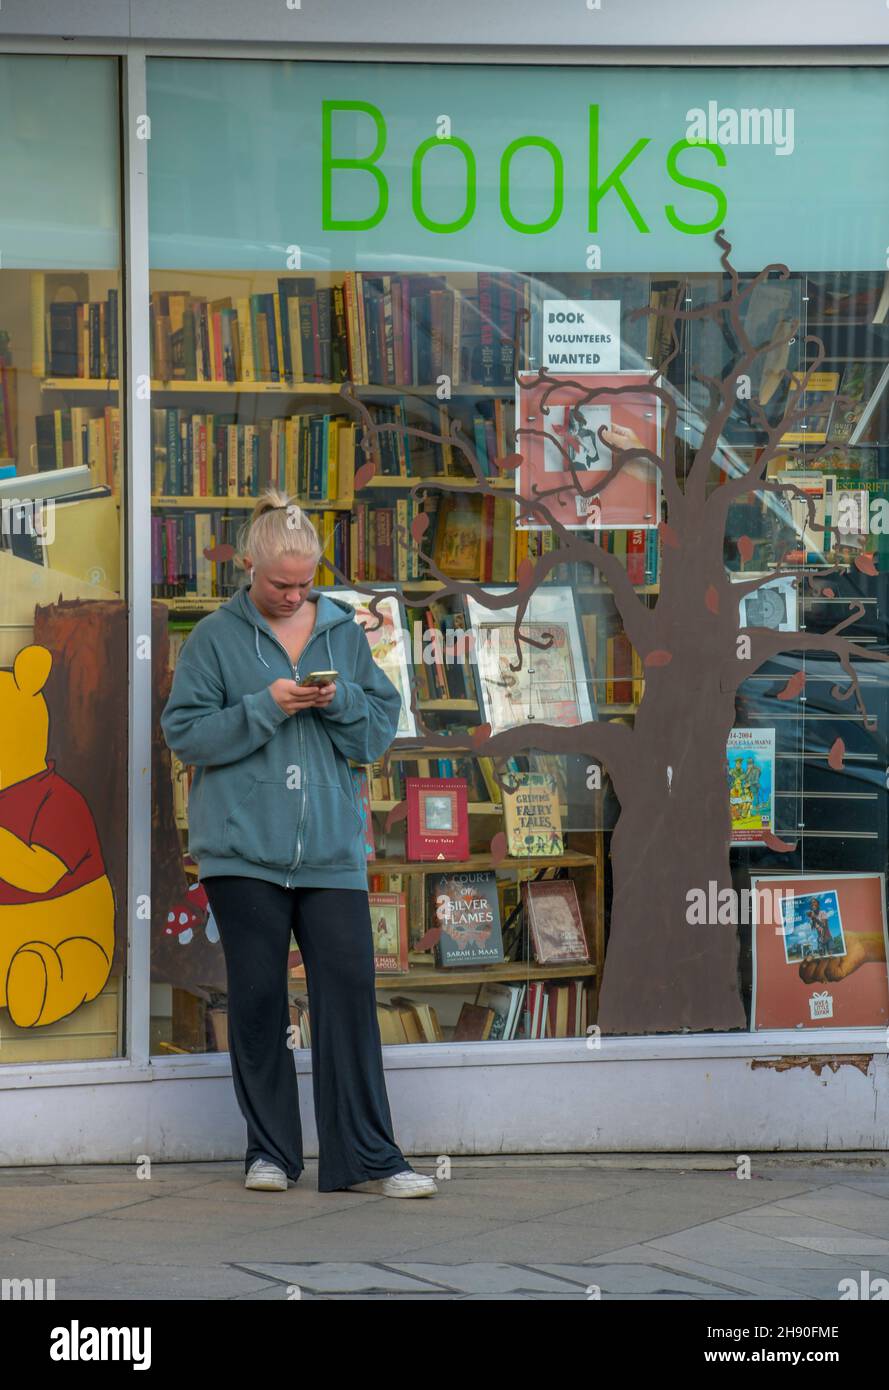 mujer joven que usa un teléfono móvil smartphone o dispositivo fuera de la ventana de una librería de oxfam, mujer leyendo mensajes telefónicos con la librería detrás Foto de stock